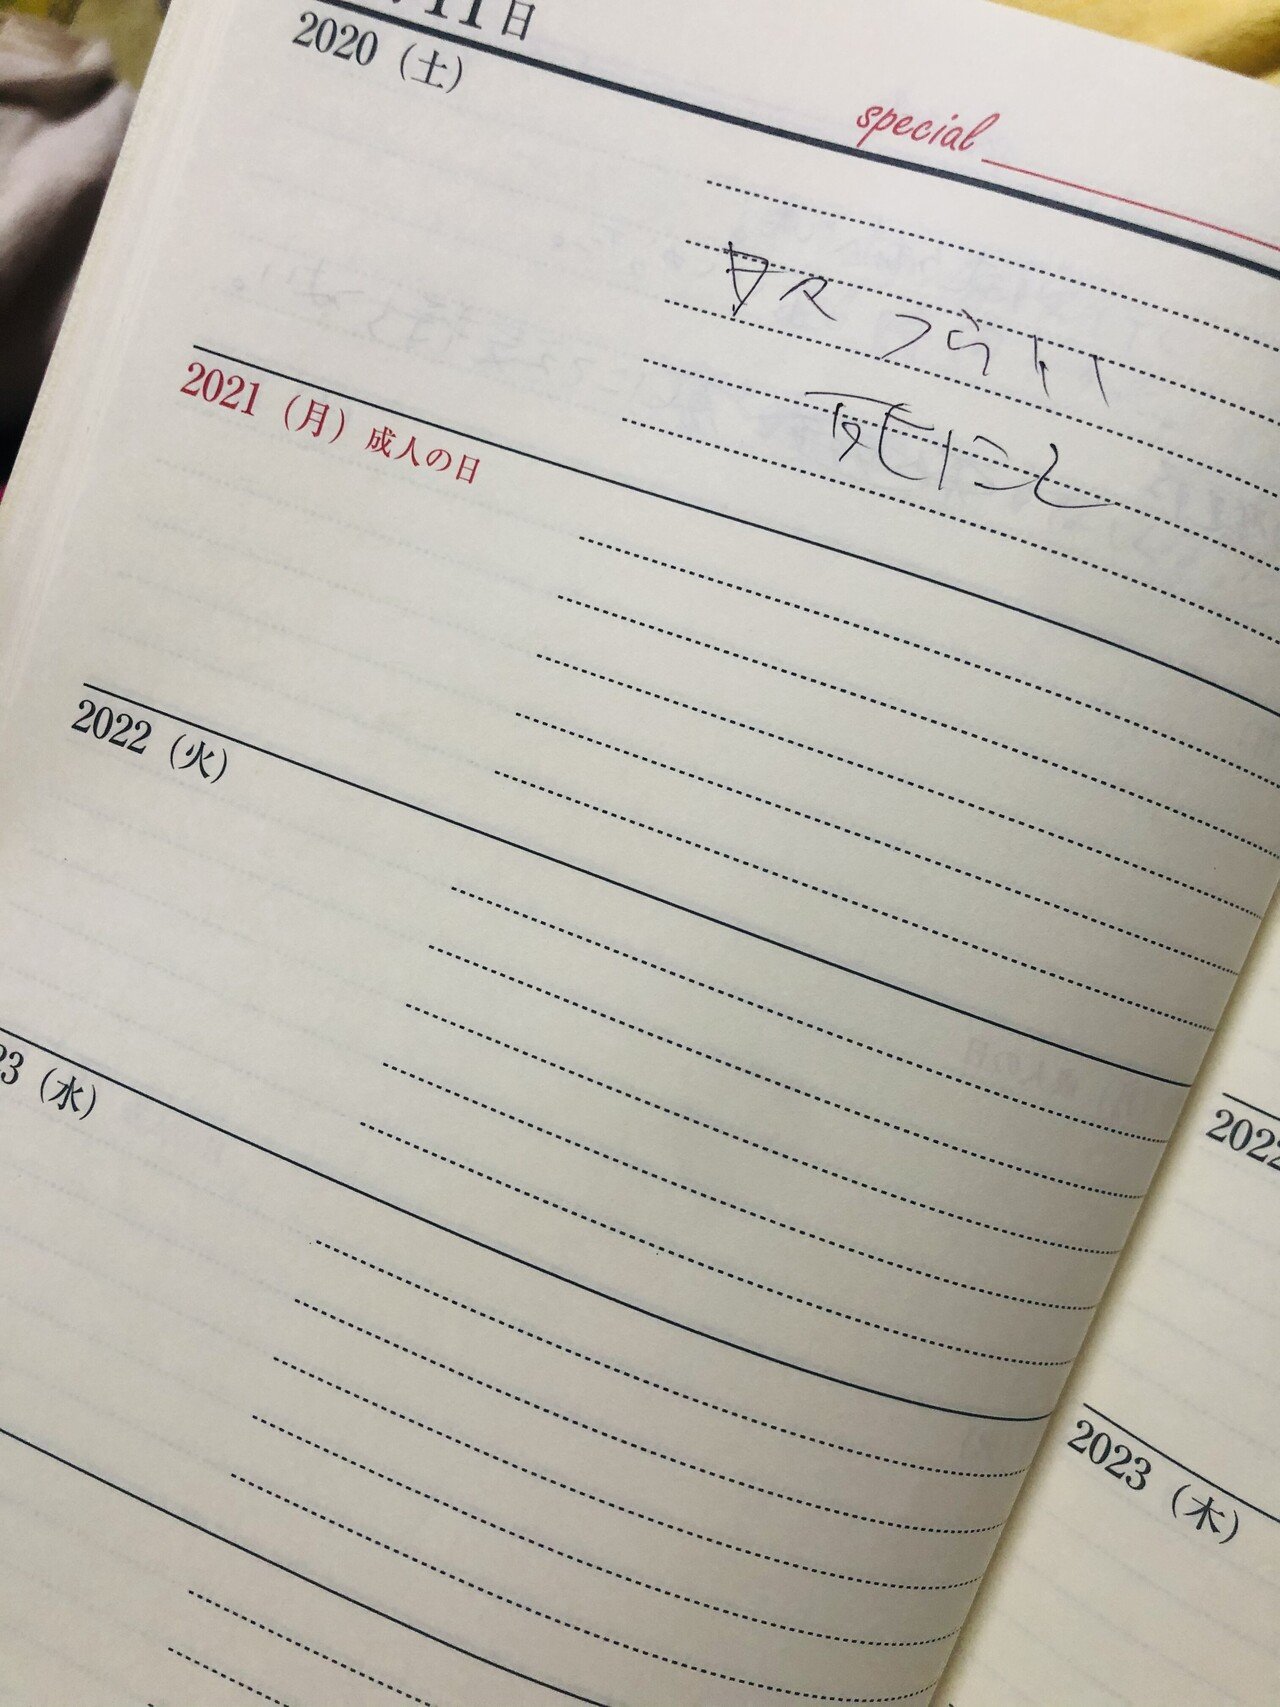 ヤフミ3年日記みたいなの買ったって書いてたっけ 私5年日記買ってたけど書かずに終わってた ちゃんと書いていこう 多分メンヘラ日記 にならるそうだけど 去年より幸せだ いい事 楽しいことで埋めて行きたいな K Note